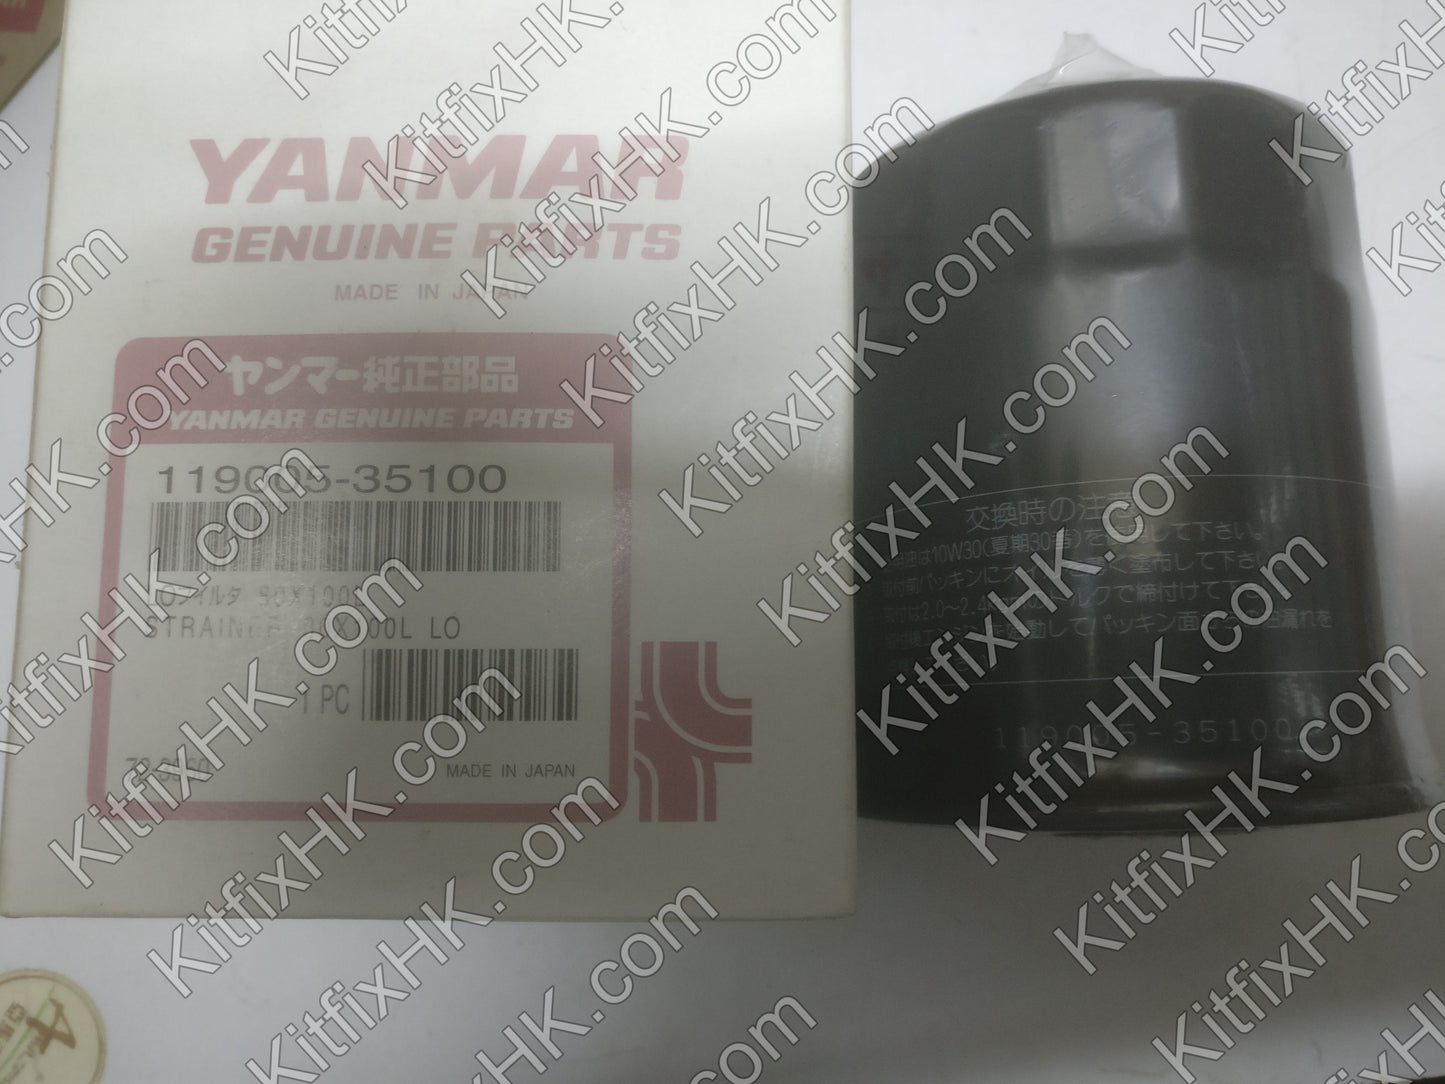 Yanmar oil filter - 119005-35100